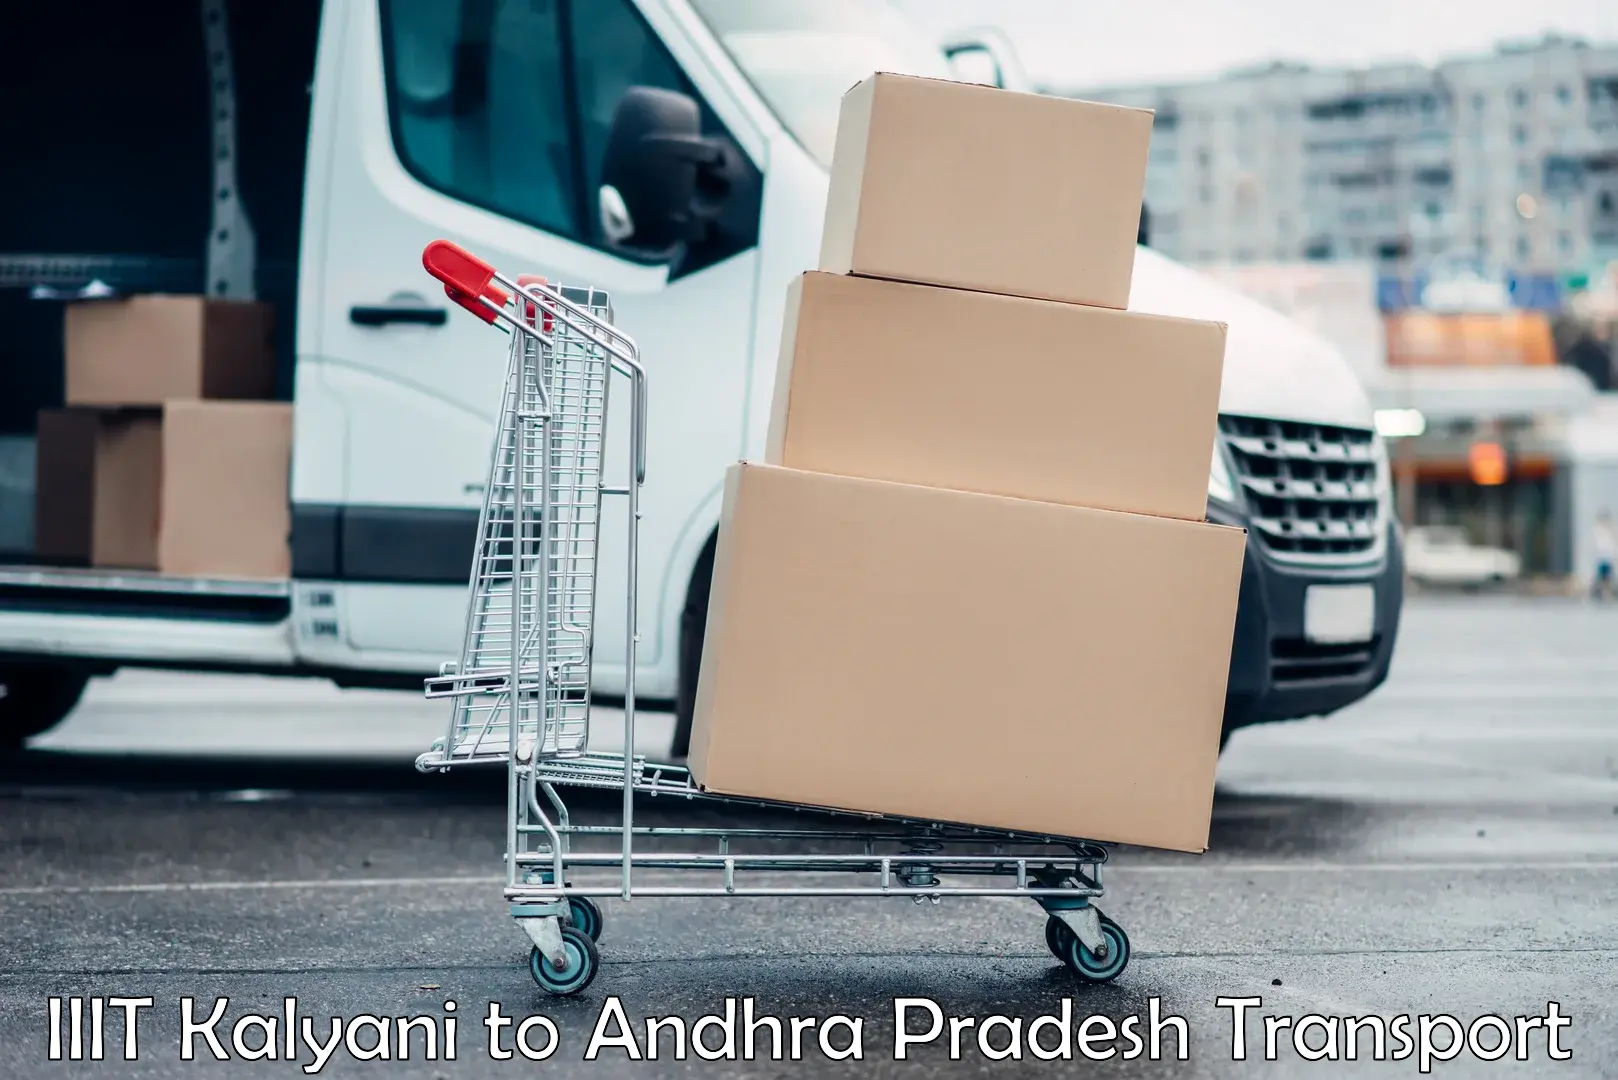 All India transport service IIIT Kalyani to Andhra Pradesh